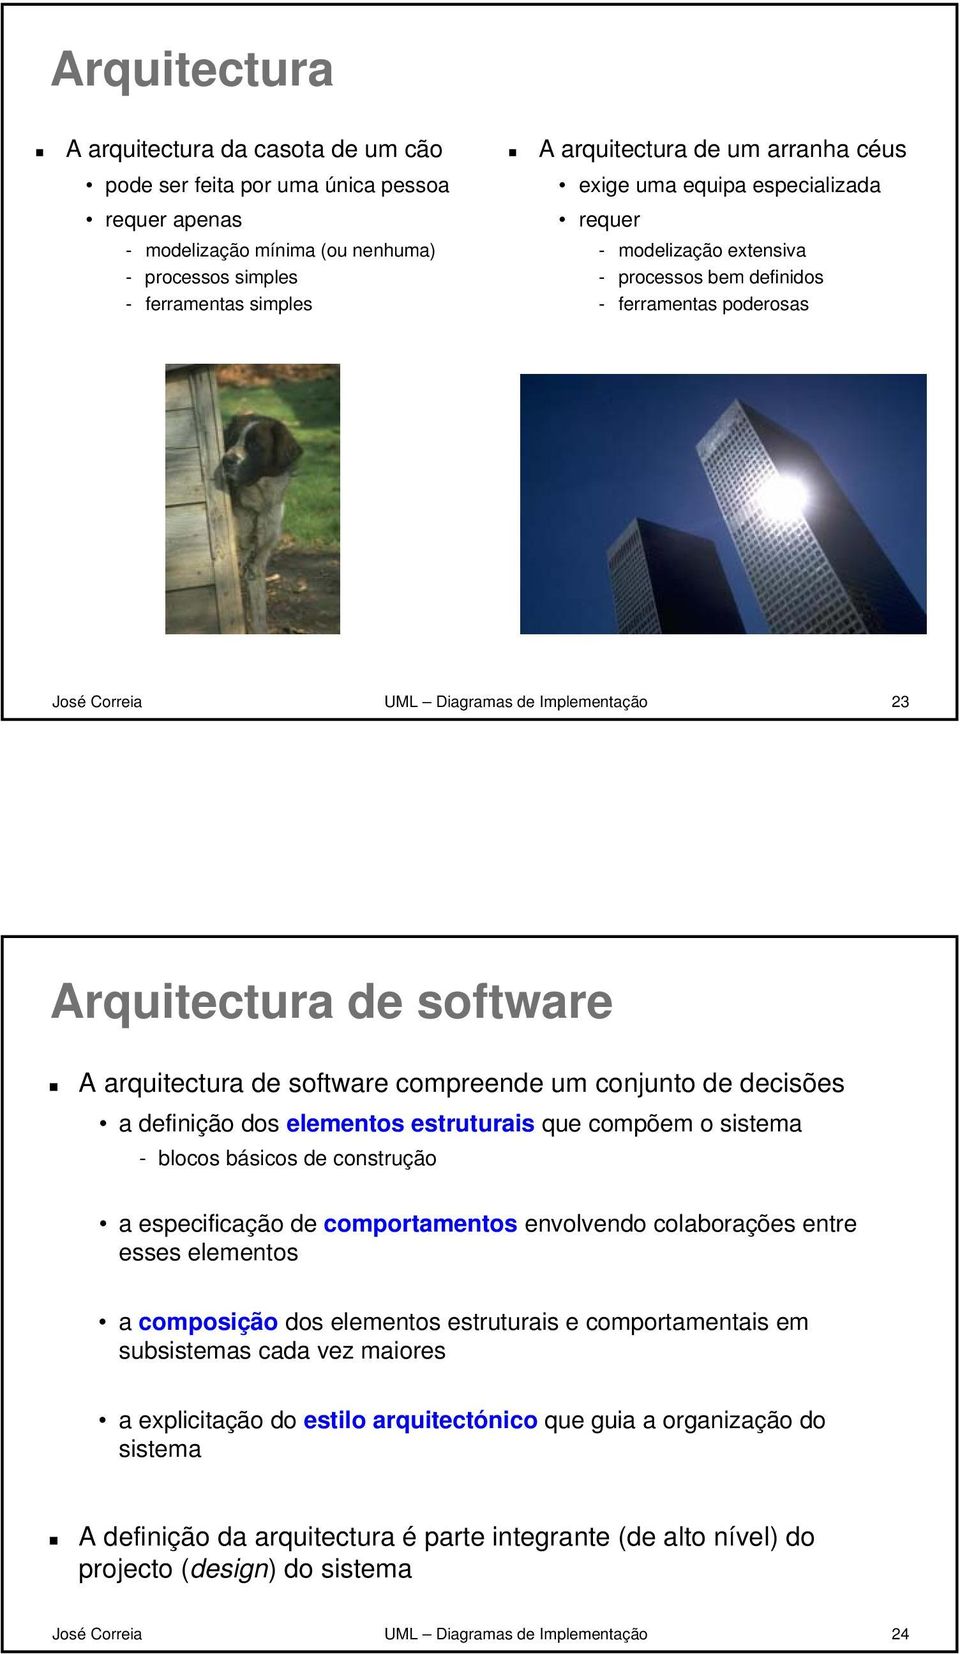 arquitectura de software compreende um conjunto de decisões a definição dos elementos estruturais que compõem o sistema - blocos básicos de construção a especificação de comportamentos envolvendo